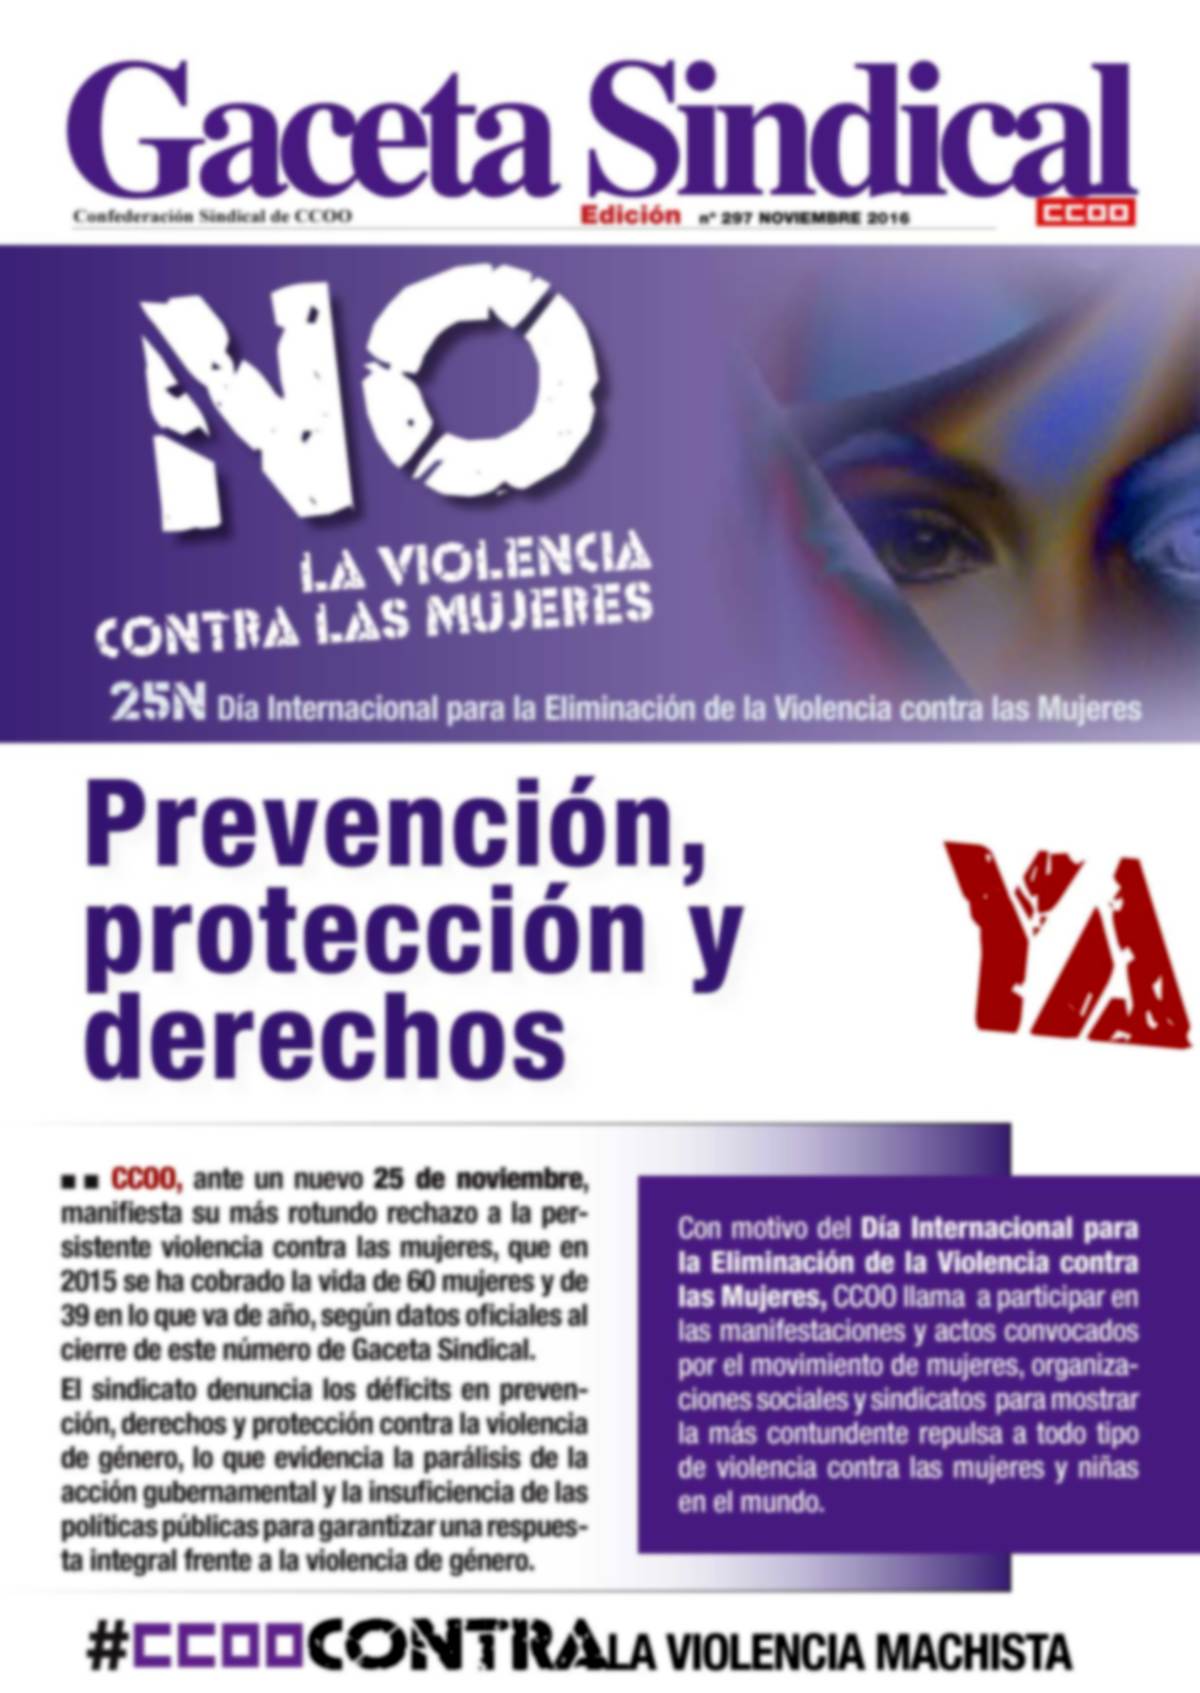 Gaceta Sindical No a la violencia contra las mujeres